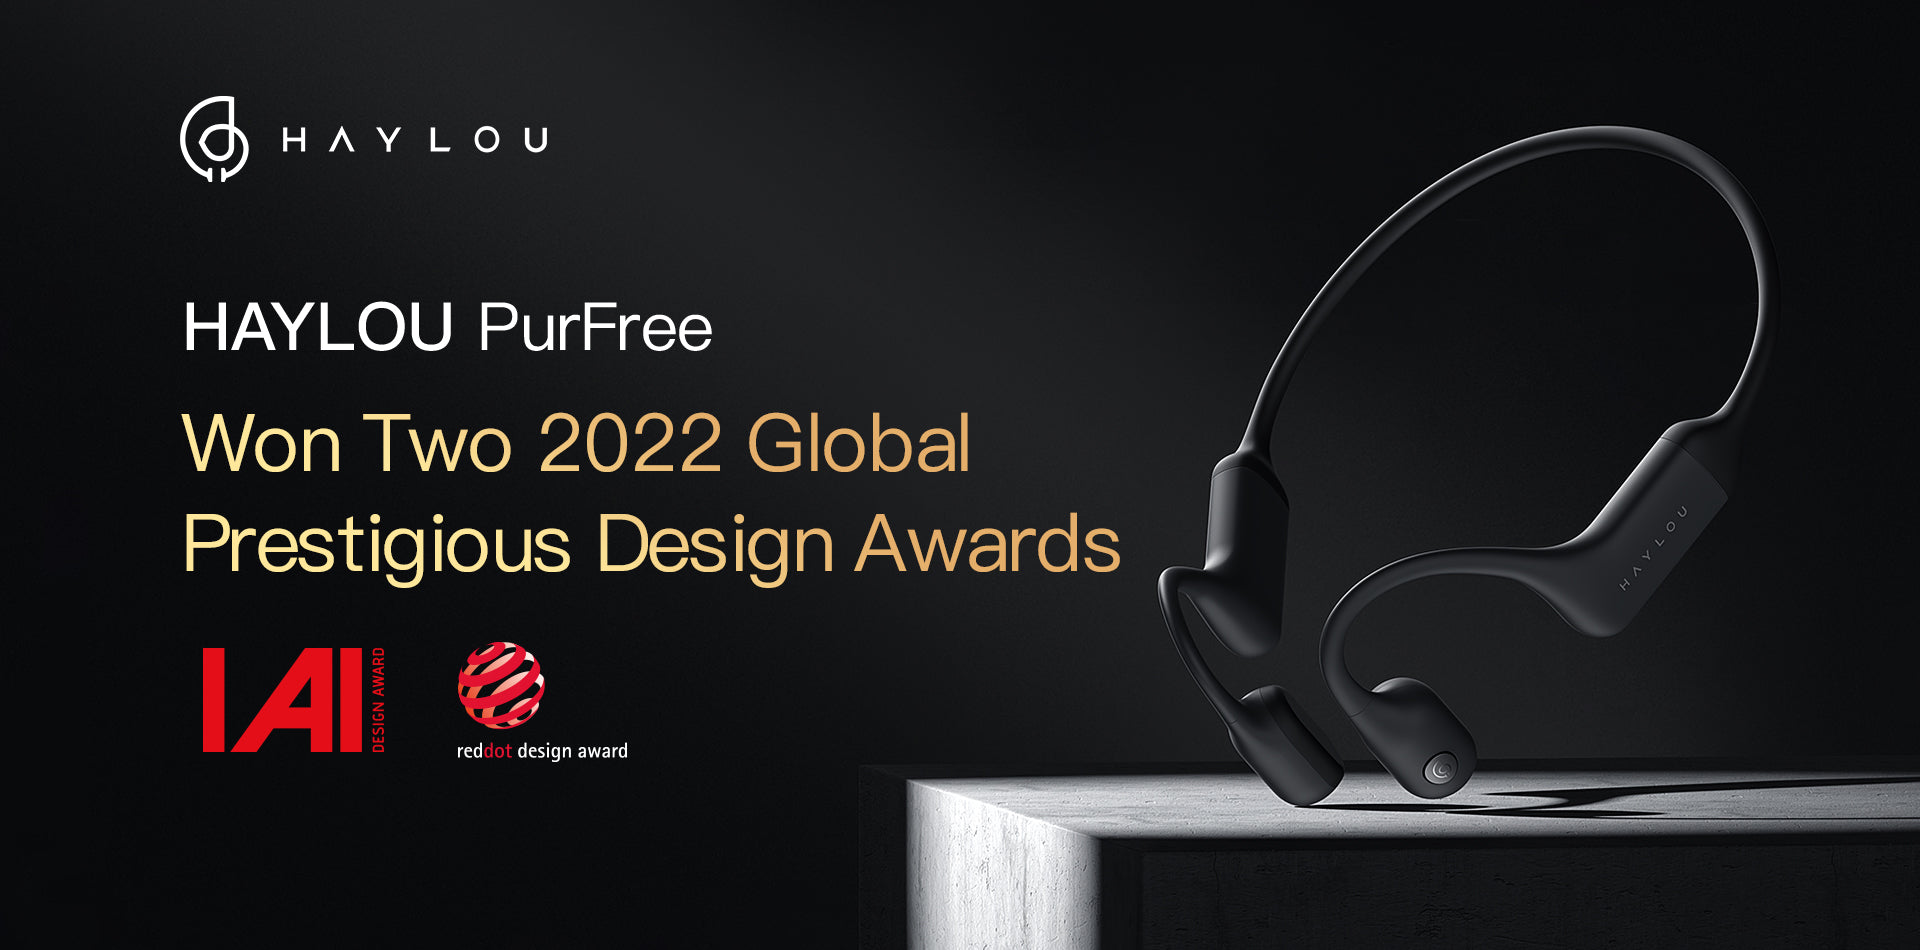 HAYLOU PurFree Won Two 2022 Global Prestigious Design Awards – Haylou